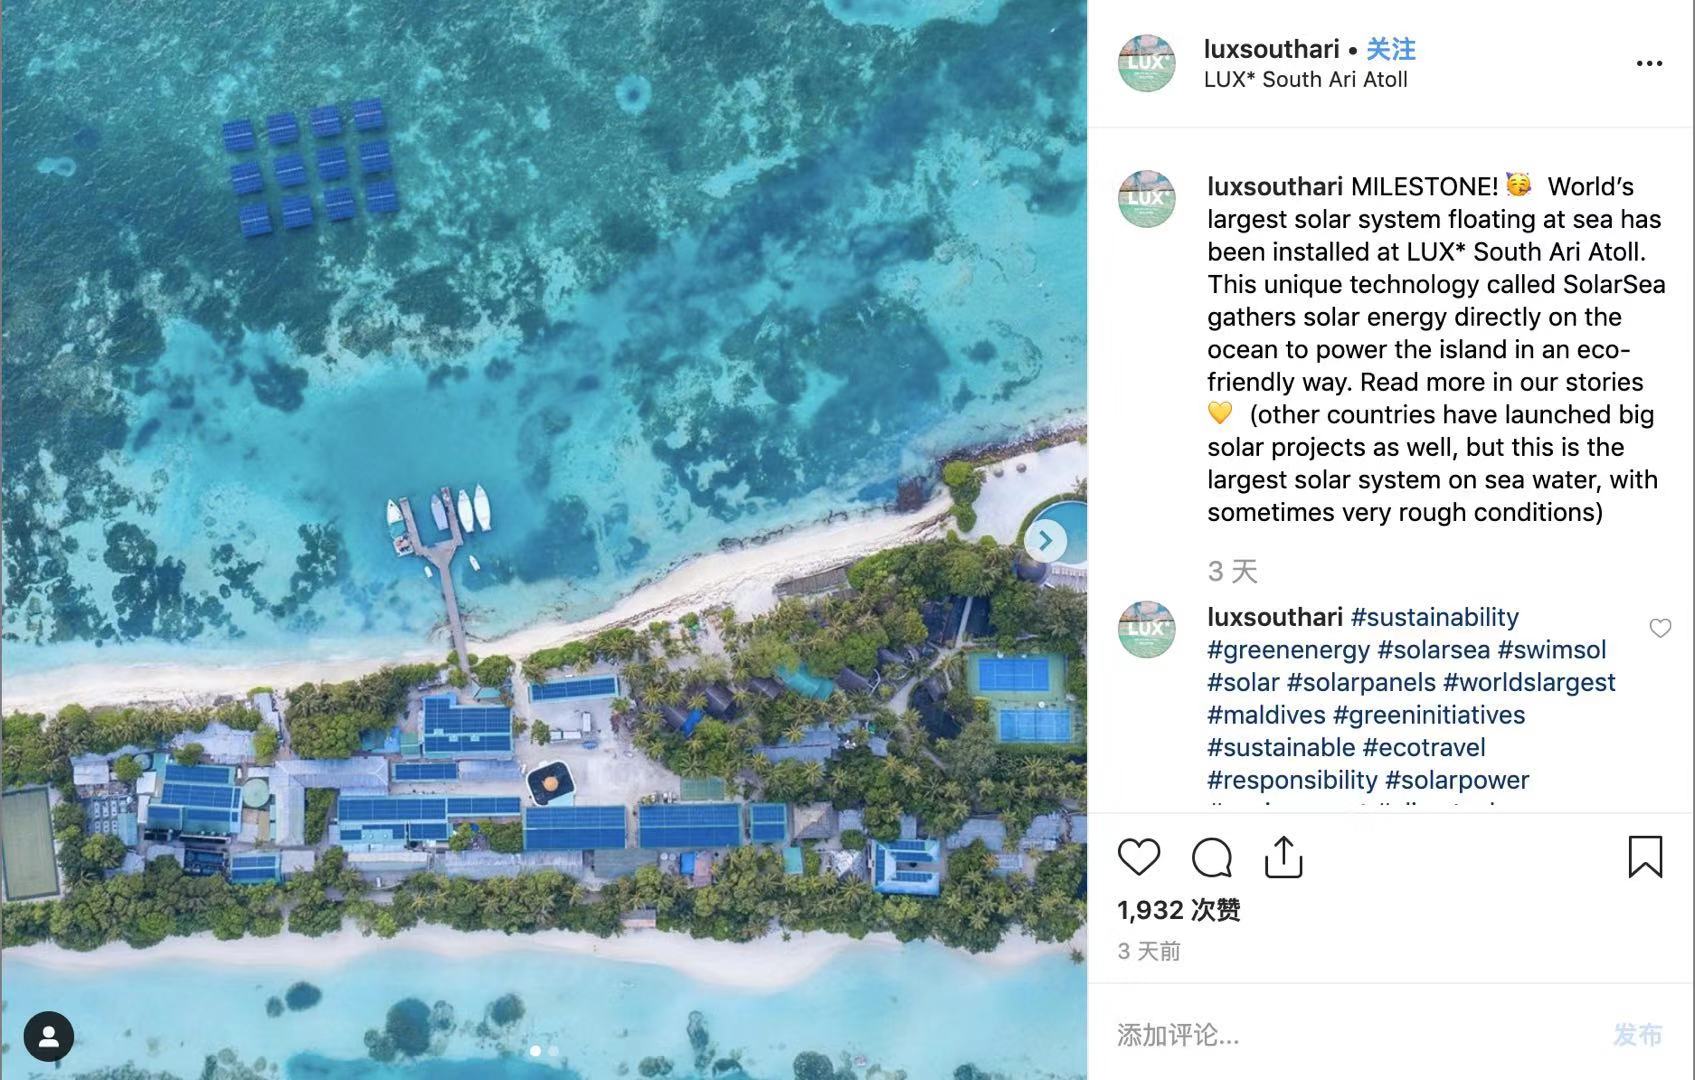 全球最大漂浮式太阳能发电系统在马尔代夫南丽世岛落成